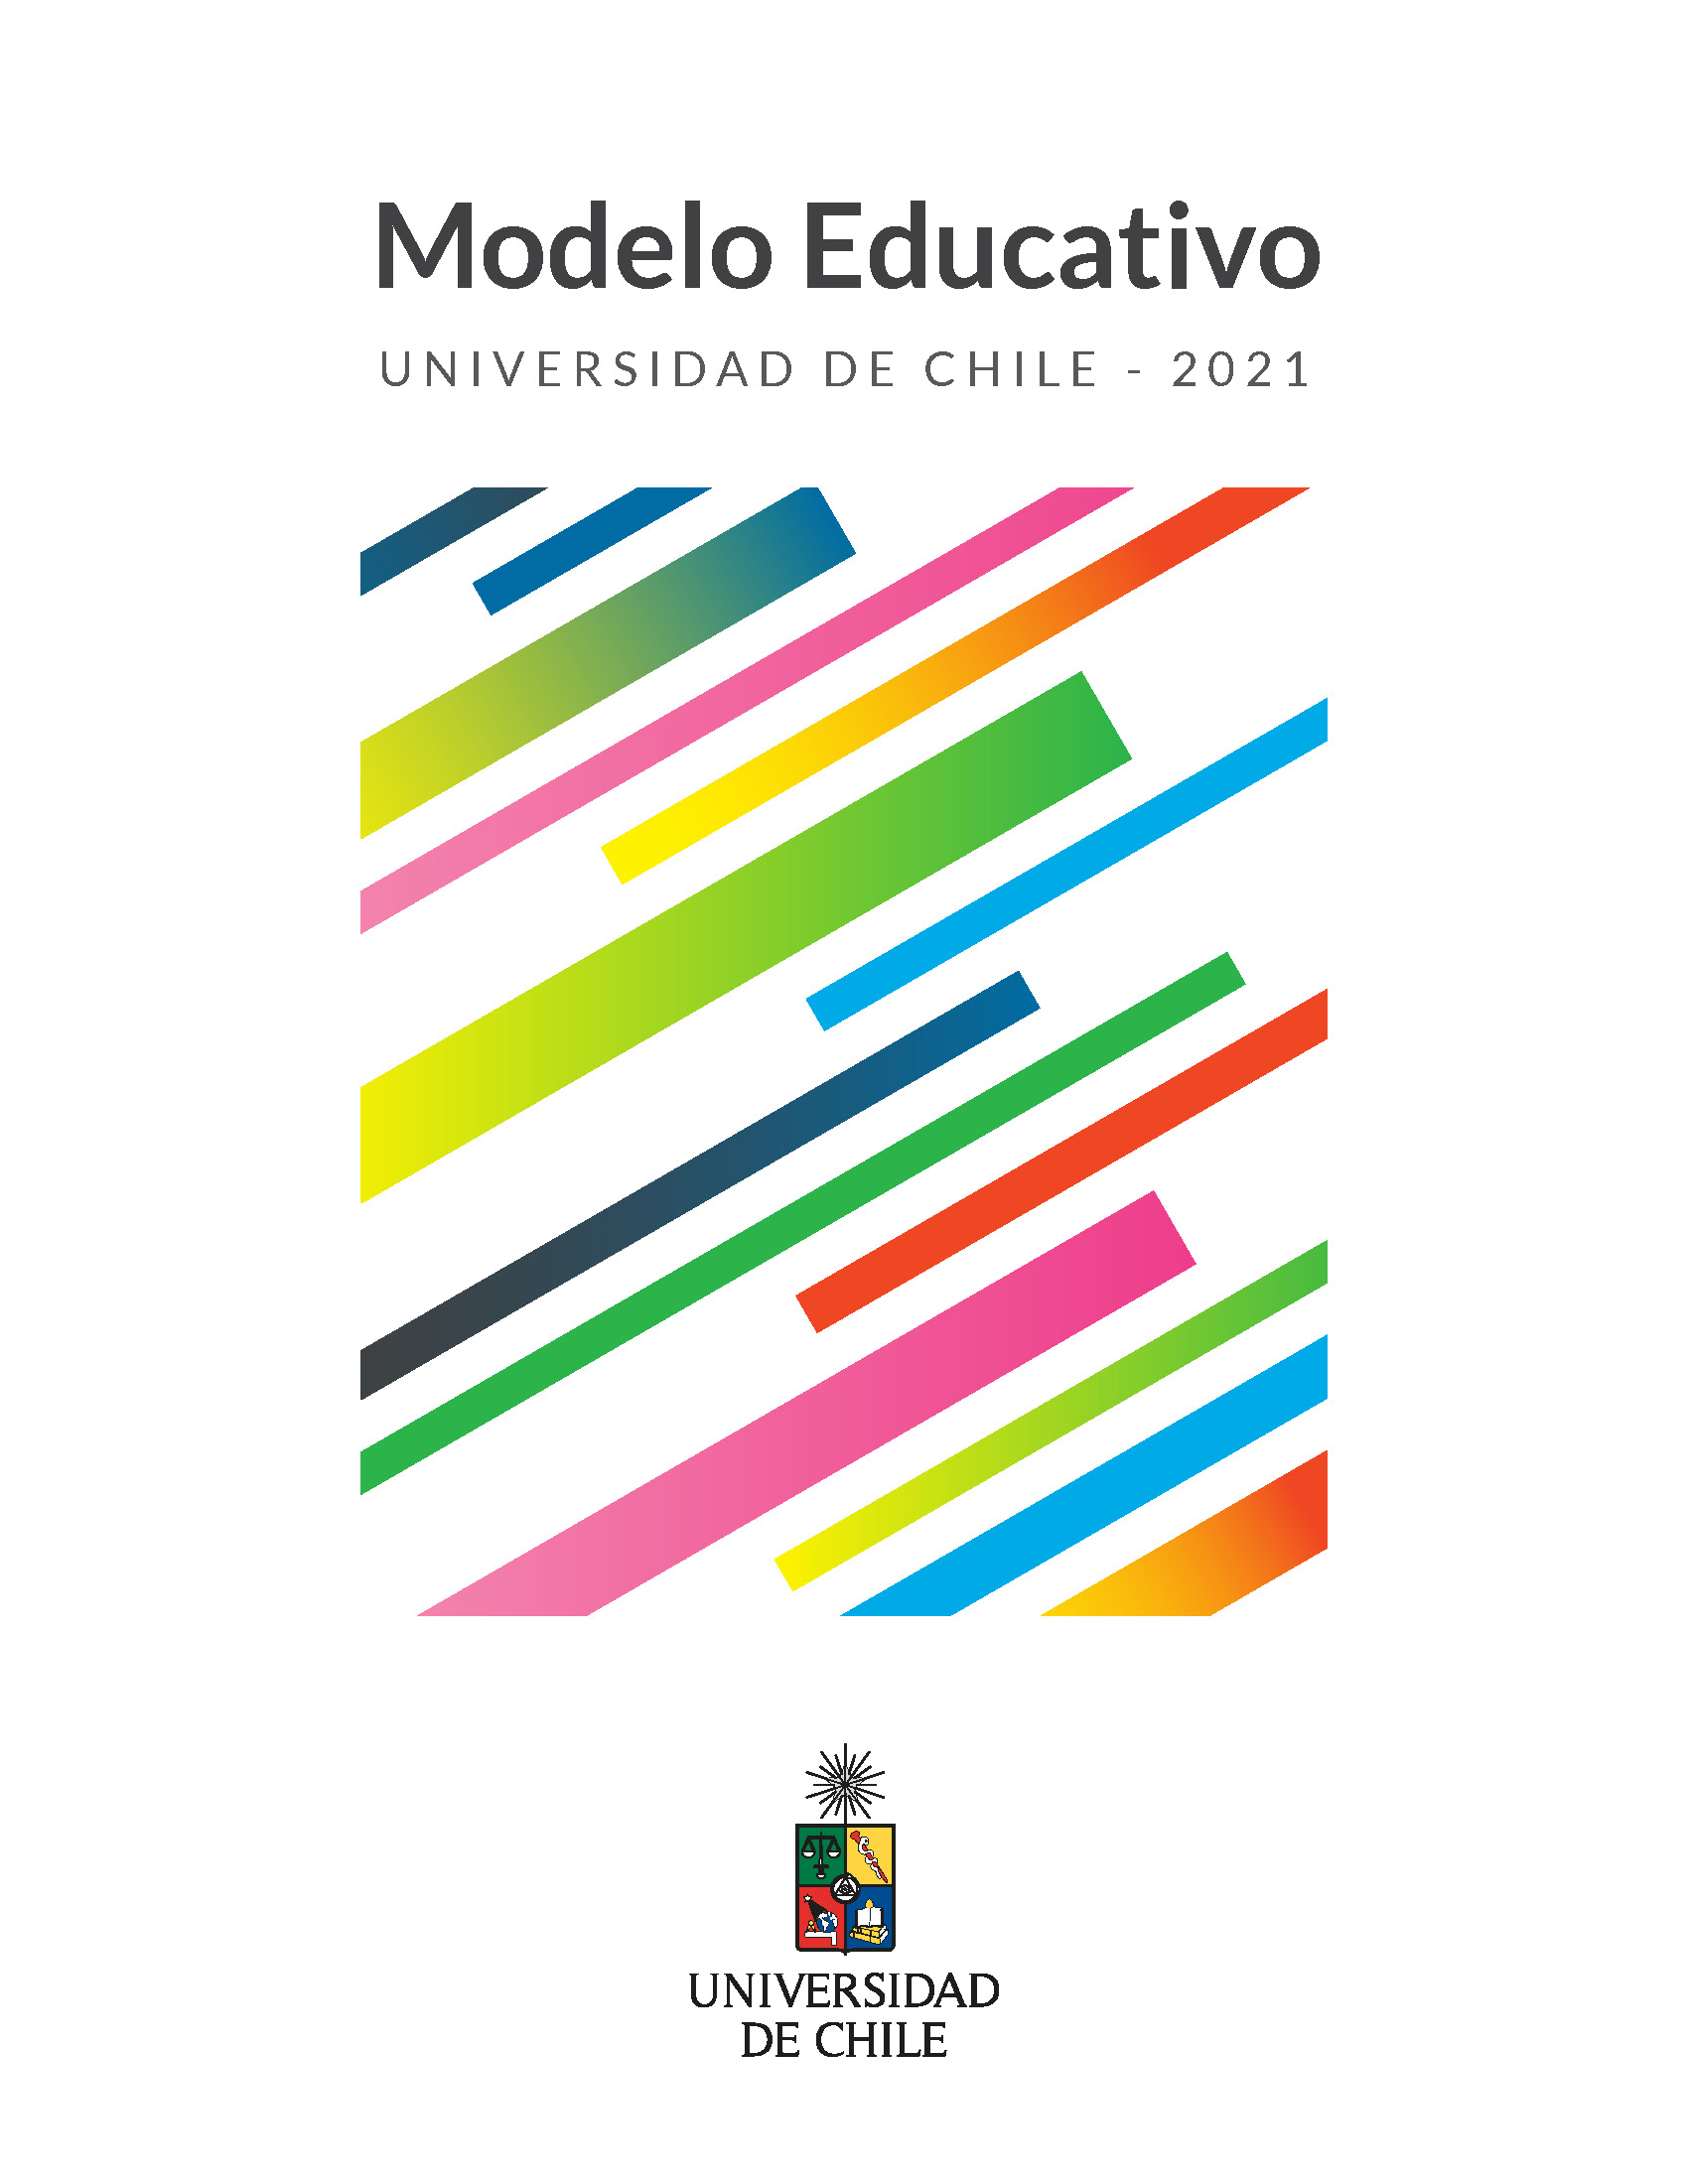 Modelo educativo de la Universidad de Chile | Universidad de Chile